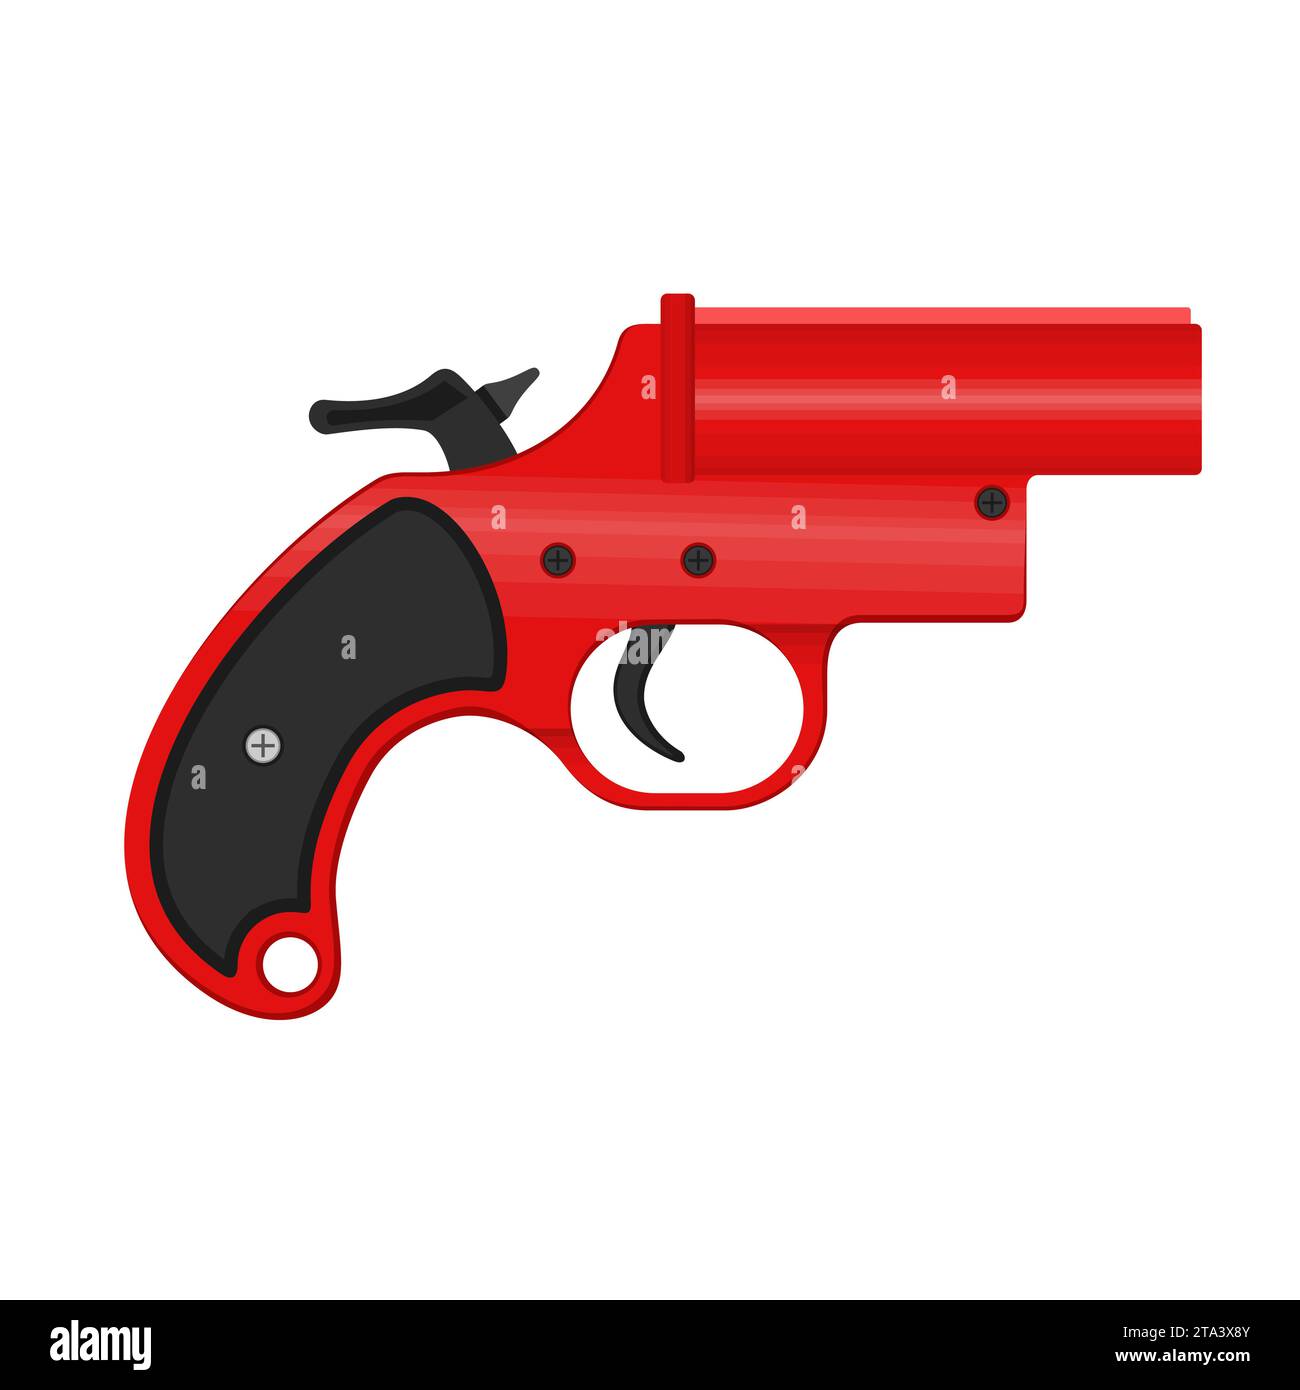 Una pistola de bengalas, también conocida como pistola muy o pistola de señal, es una pistola de gran calibre que descarga bengalas. La pistola de llamaradas se utiliza para una señal de socorro Ilustración del Vector